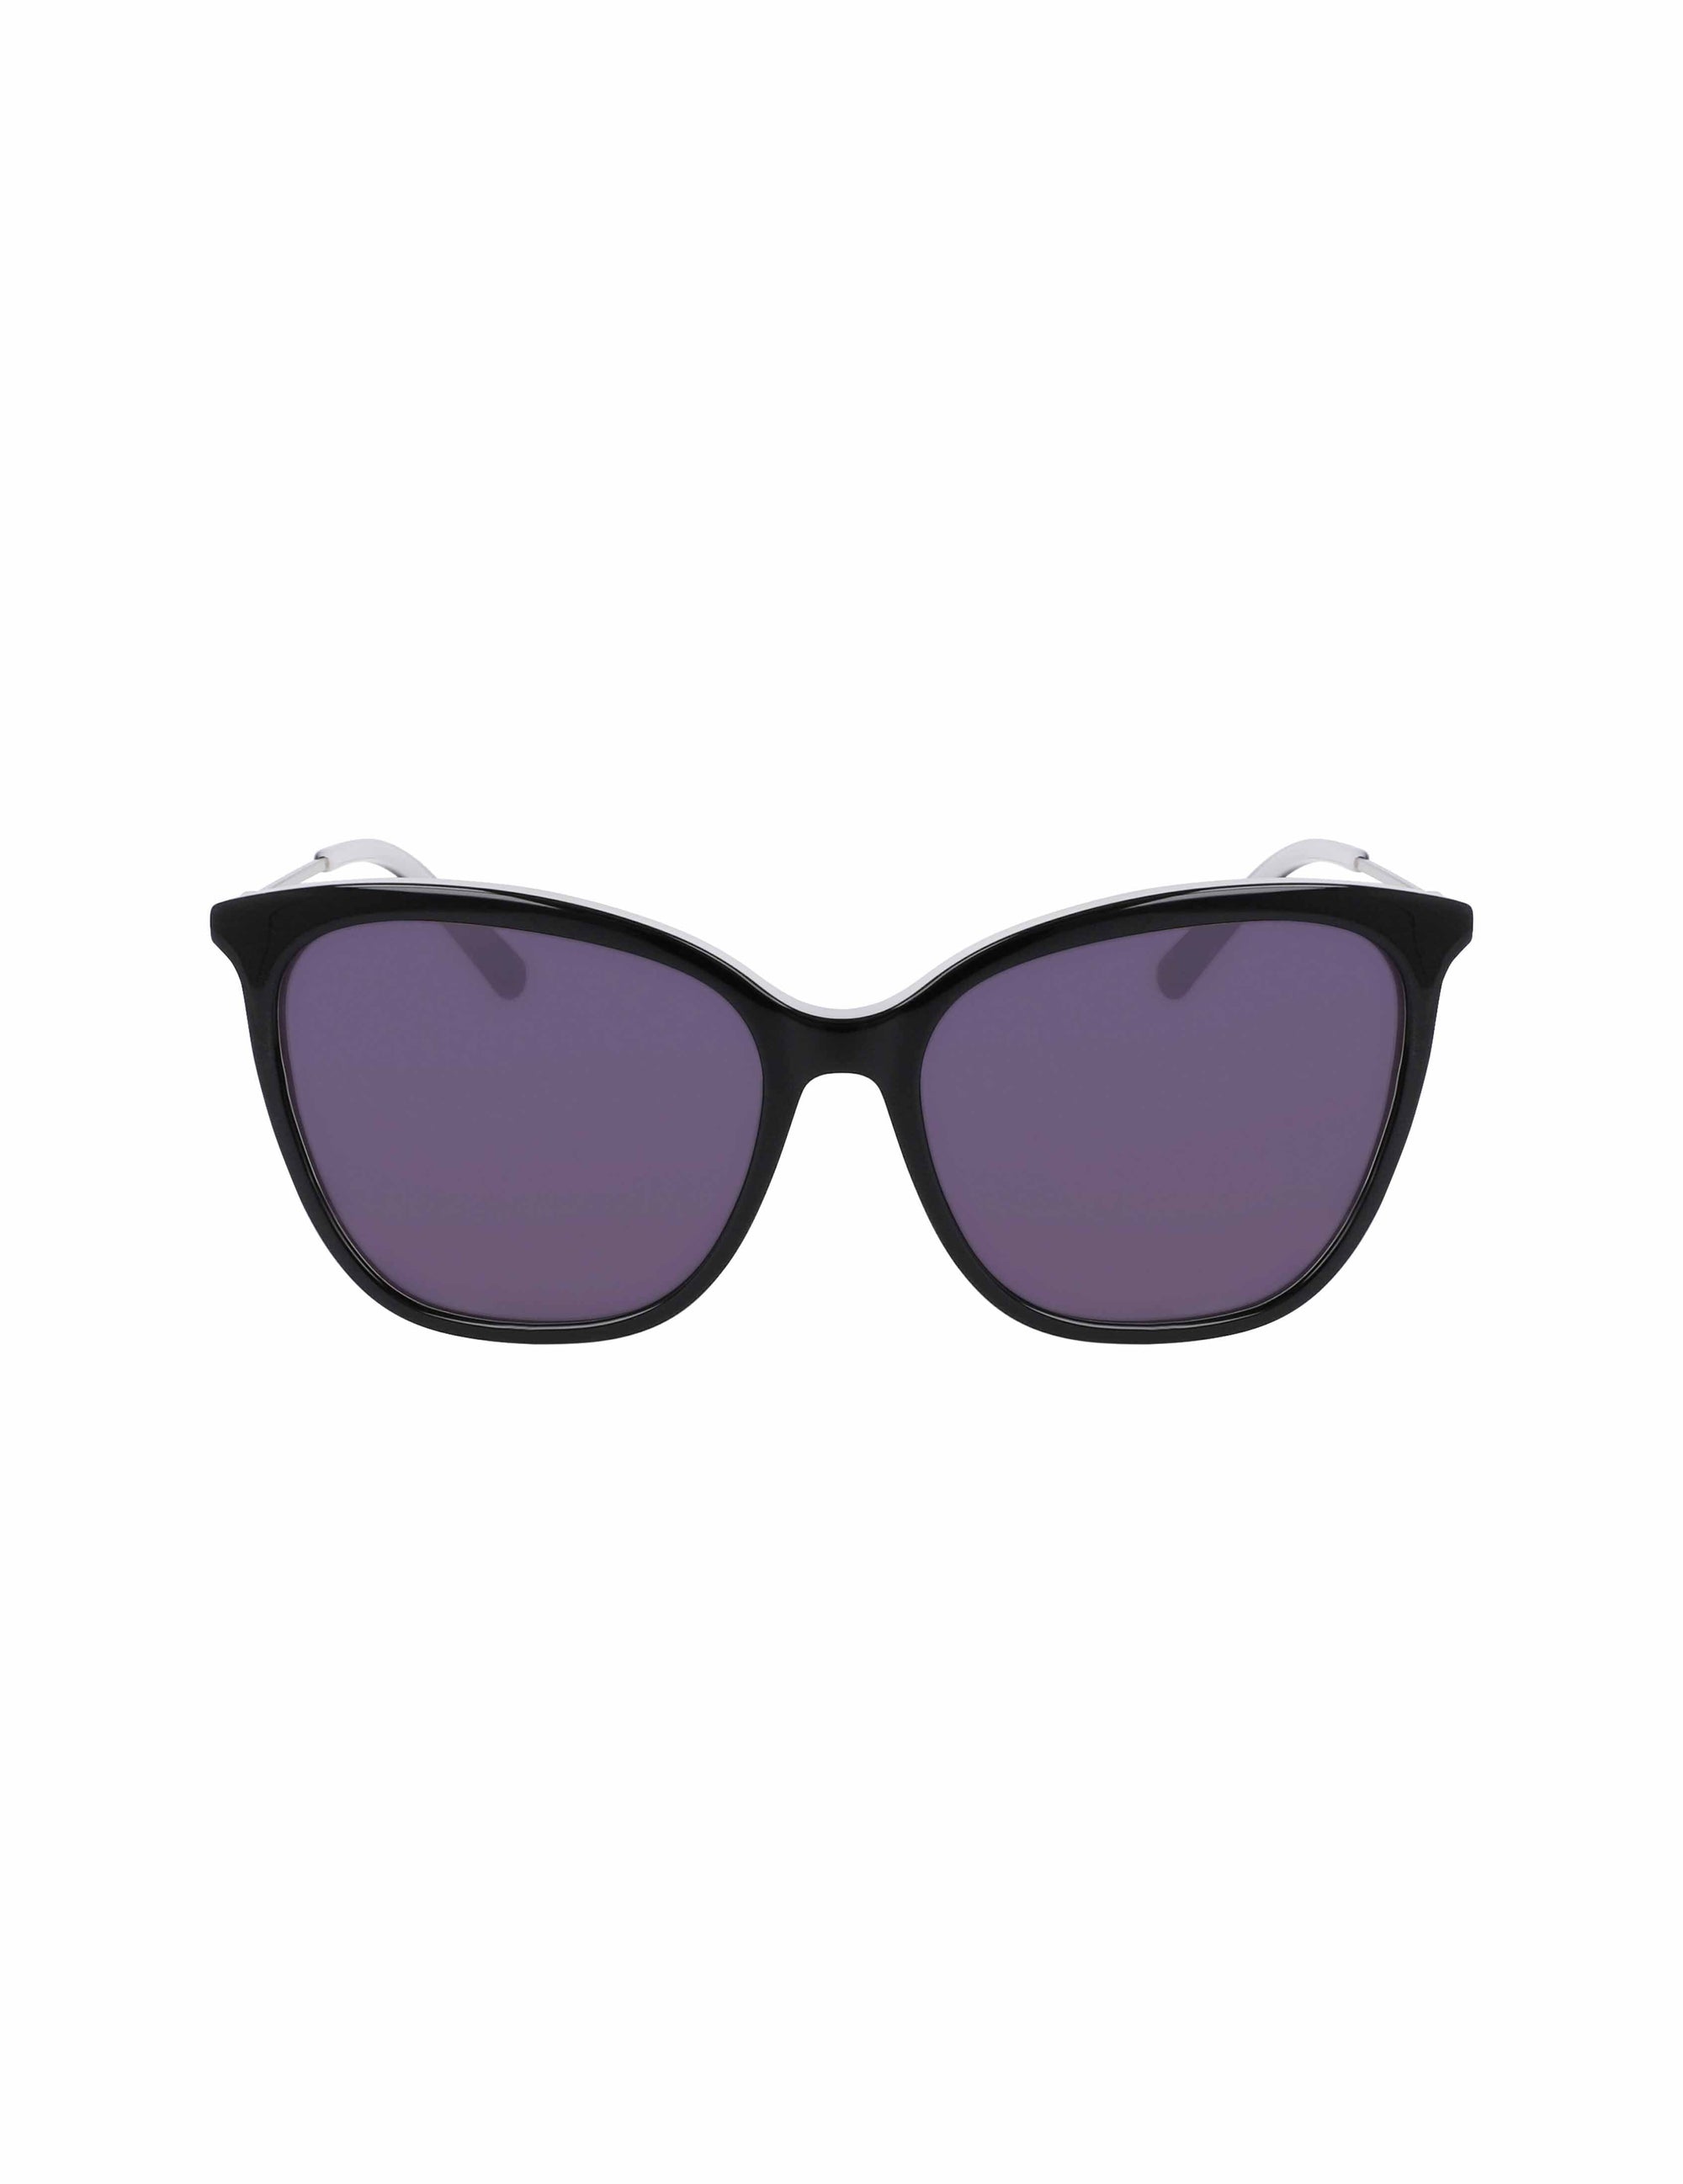 Anne Klein Black Oversized Square Sunglasses